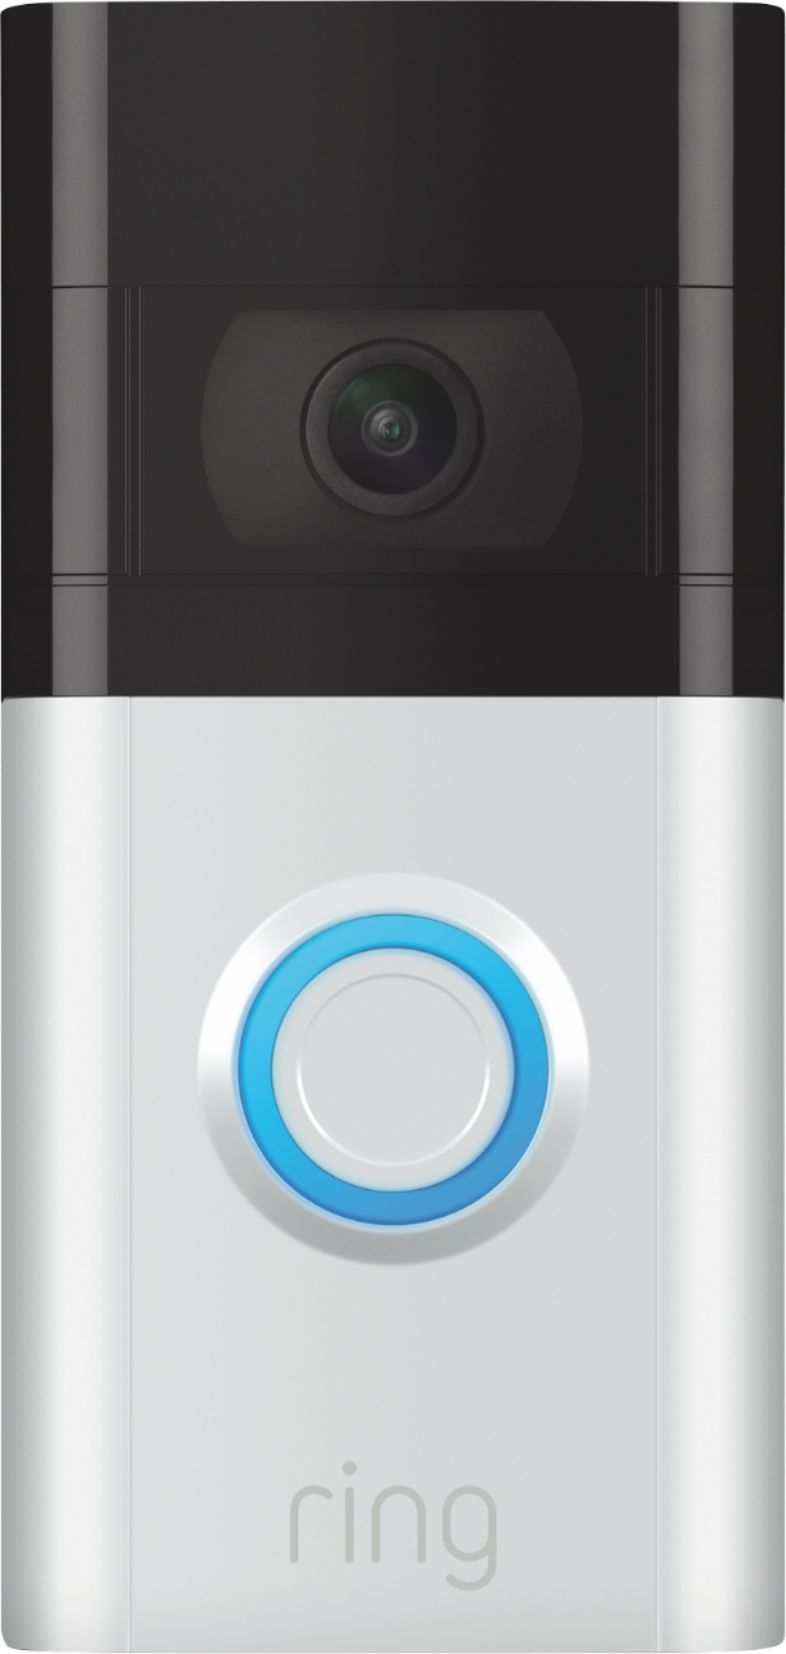 Ring Video Doorbell 3 Satin Nickel 8VRSLZ-0EN0 - Best Buy | Best Buy U.S.